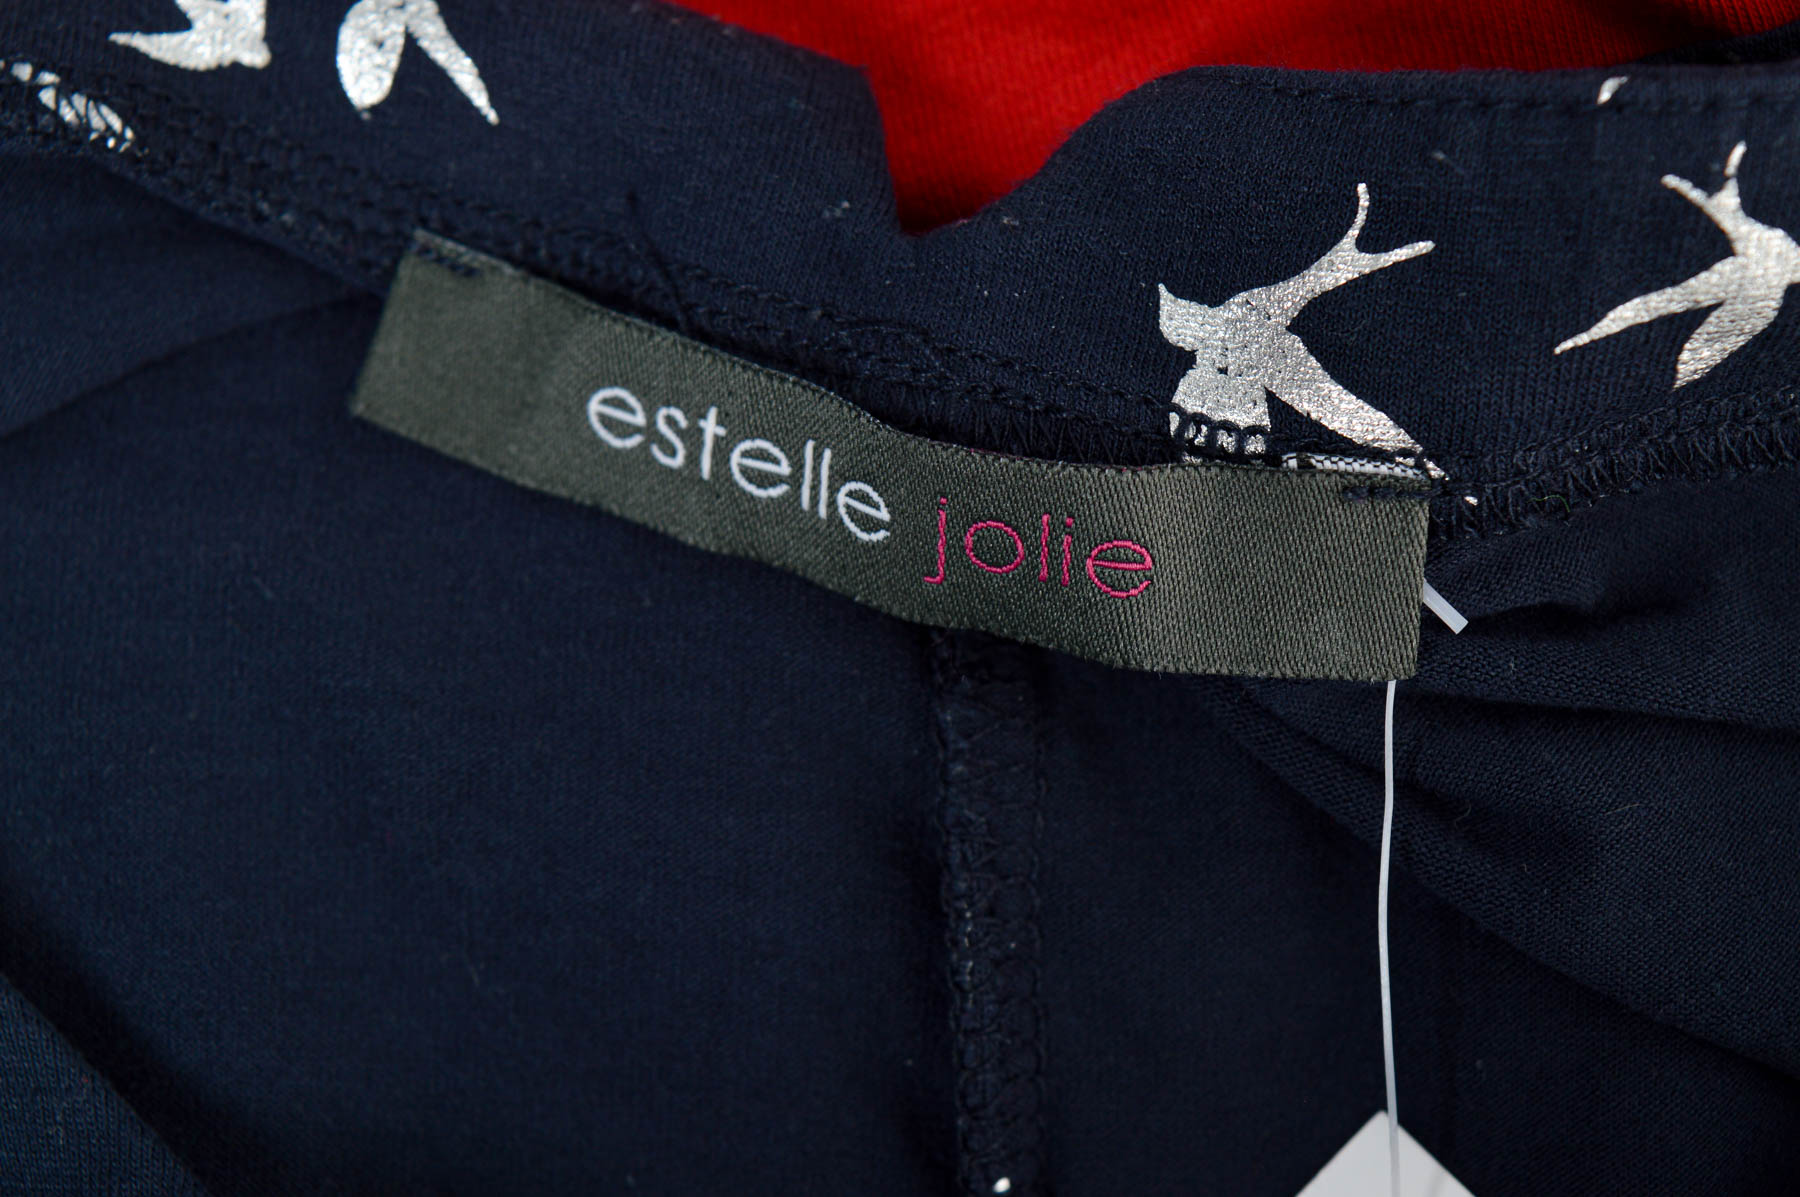 Women's blouse - Estelle jolie - 2